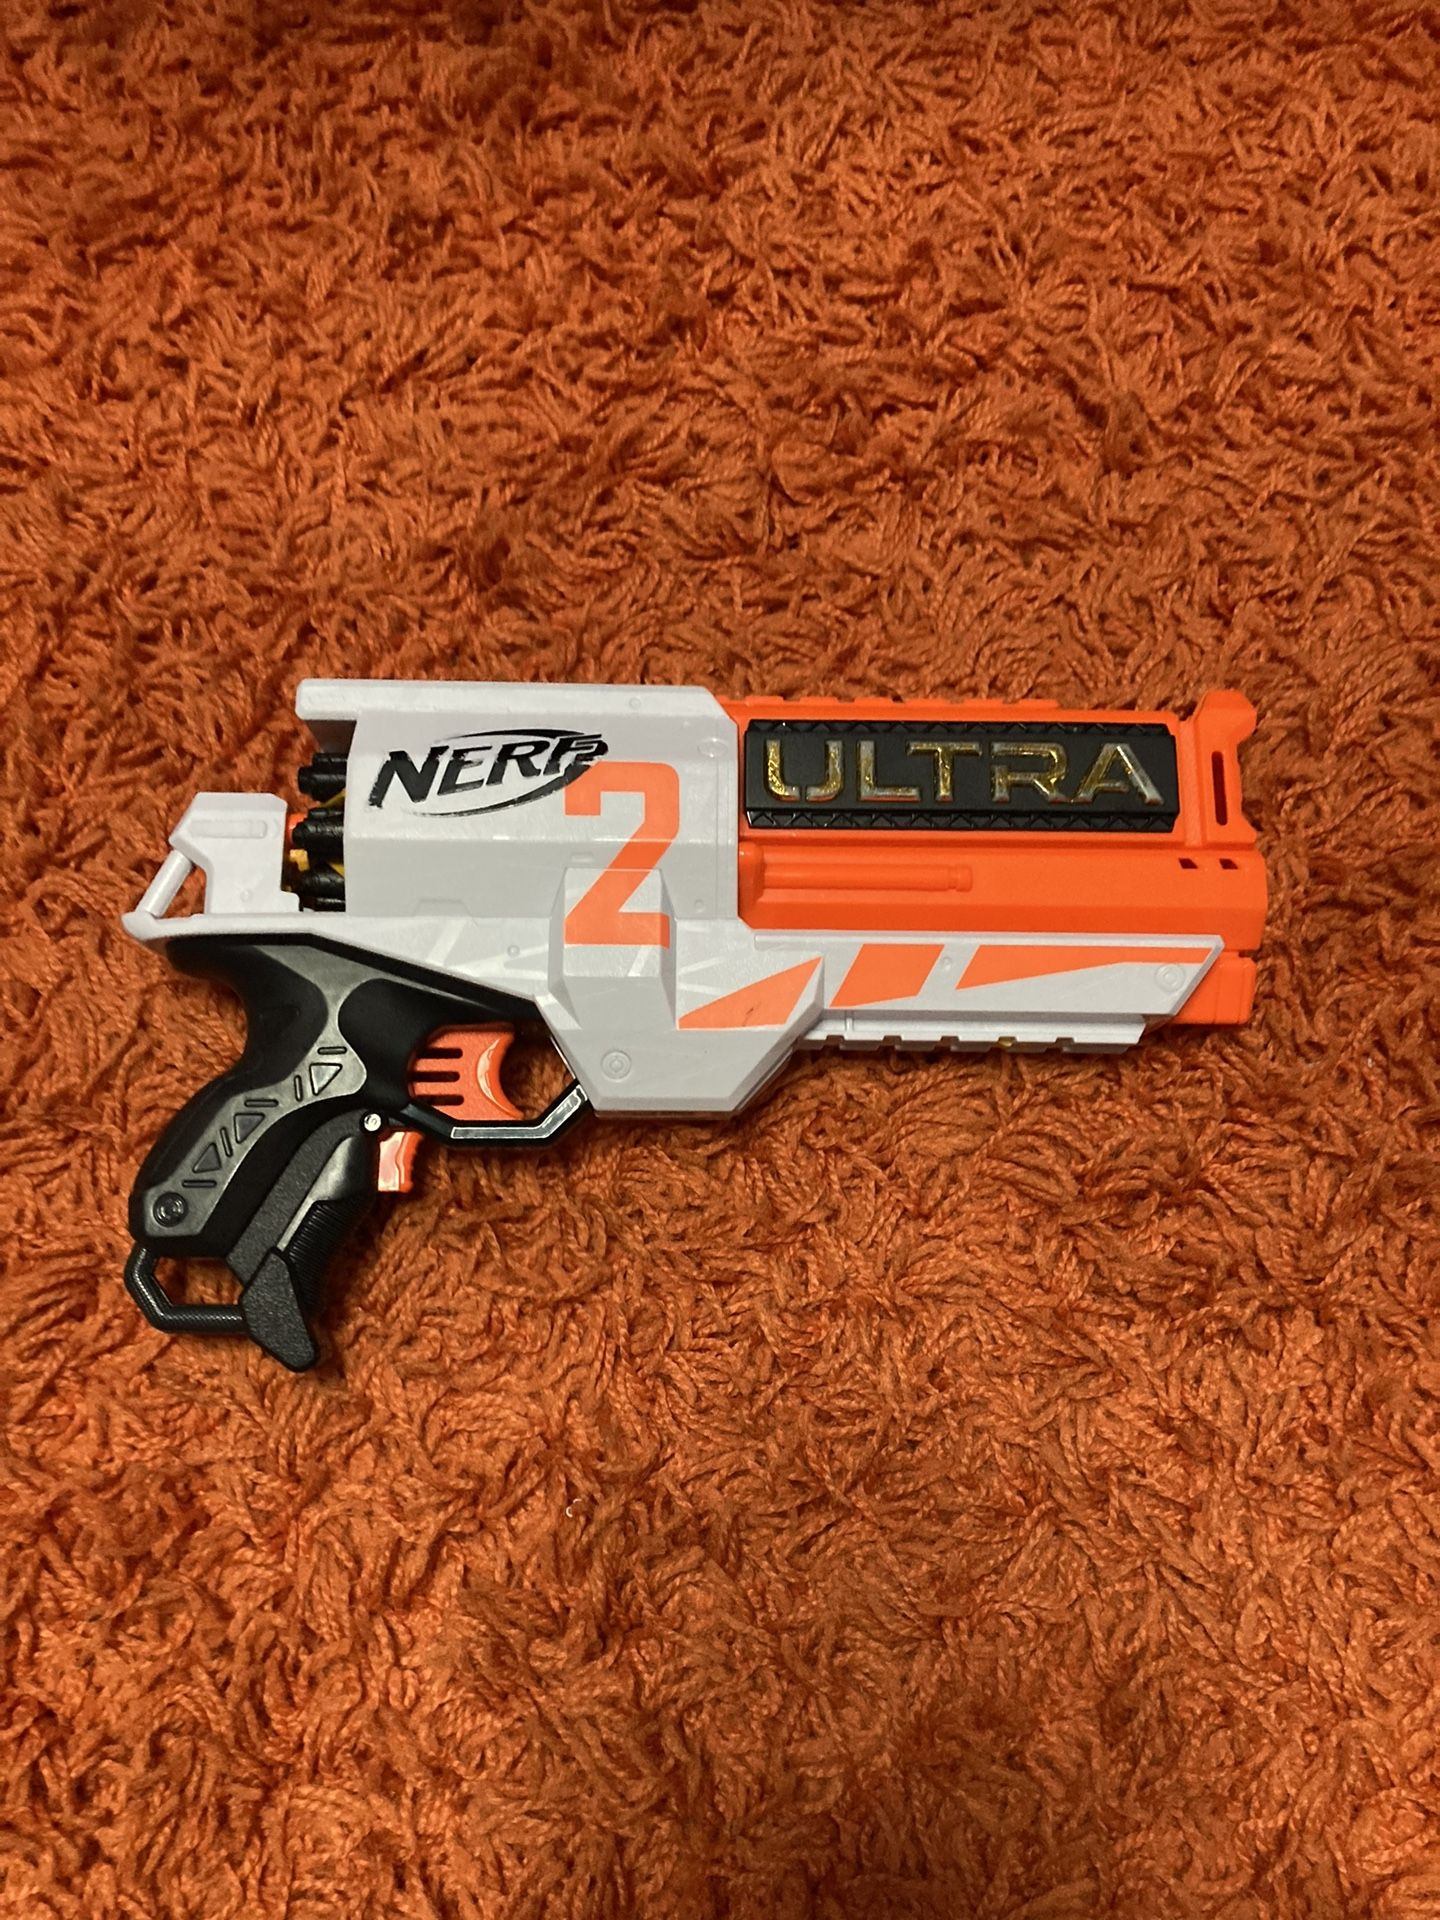 ultra 2 nerf gun